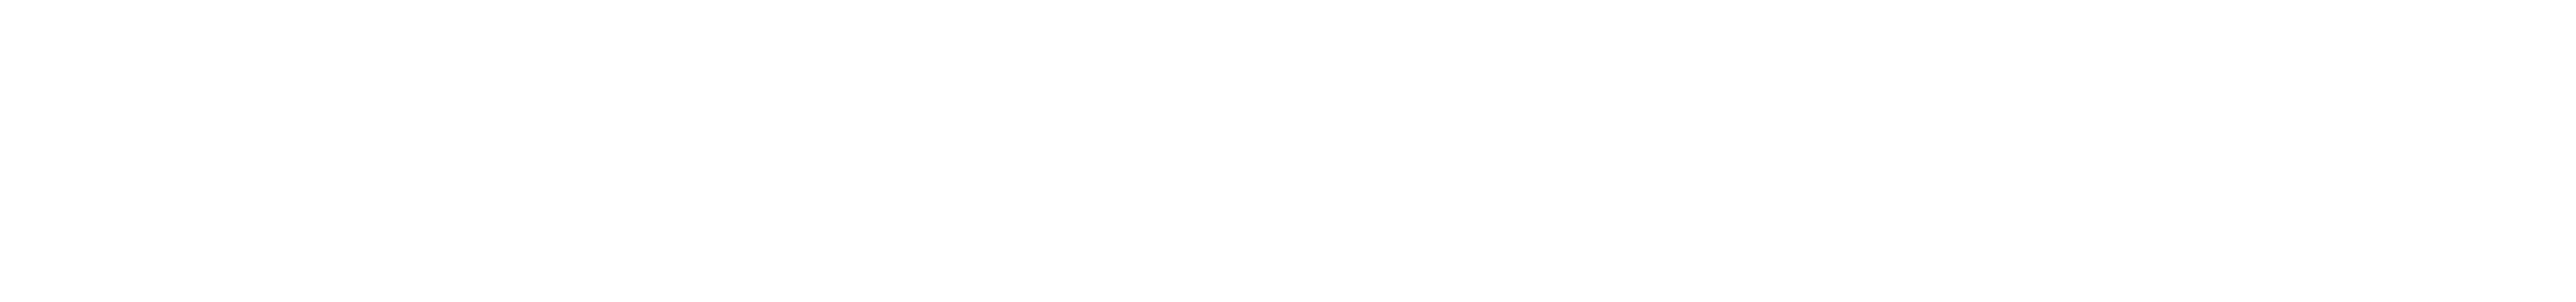 Logo SPIMAT